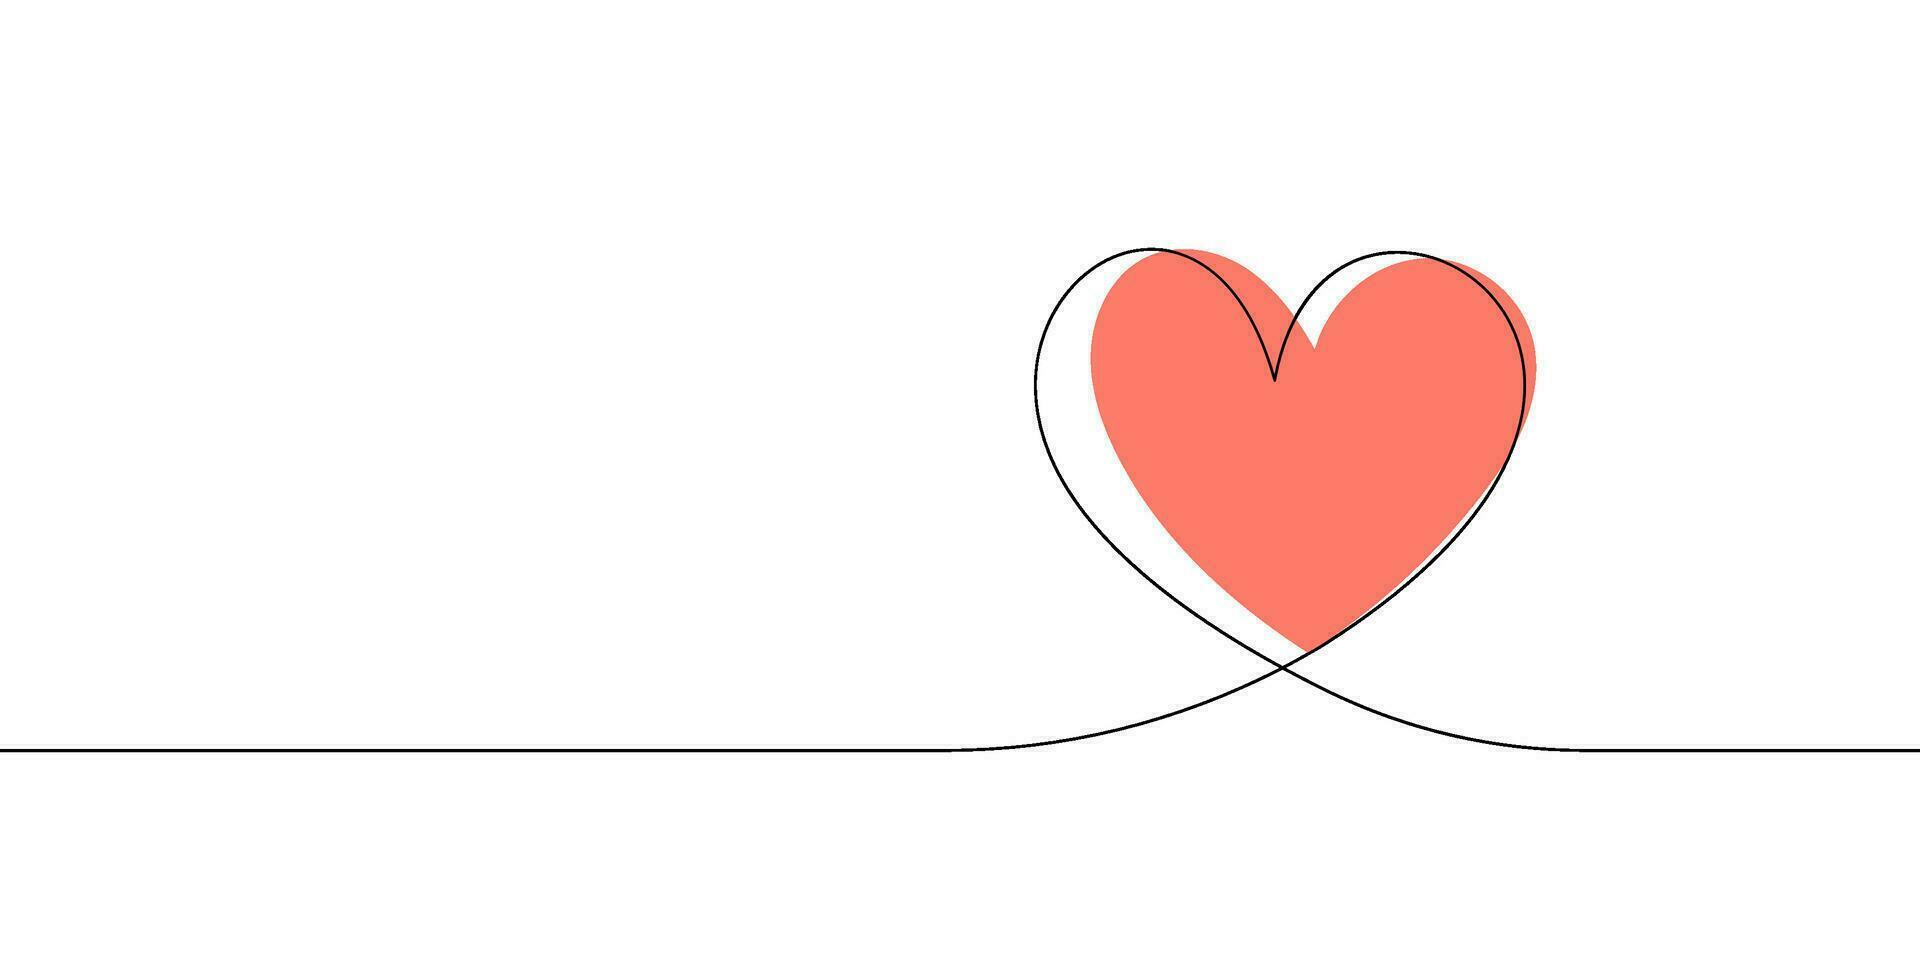 hjärta och kärlek i vektor kontinuerlig linje konst illustration av en romantisk minimalistisk bröllop kort på en vit bakgrund. en bröllop hjärta skiss med konstnärlig linje design. vektor illustration kärlek konst.